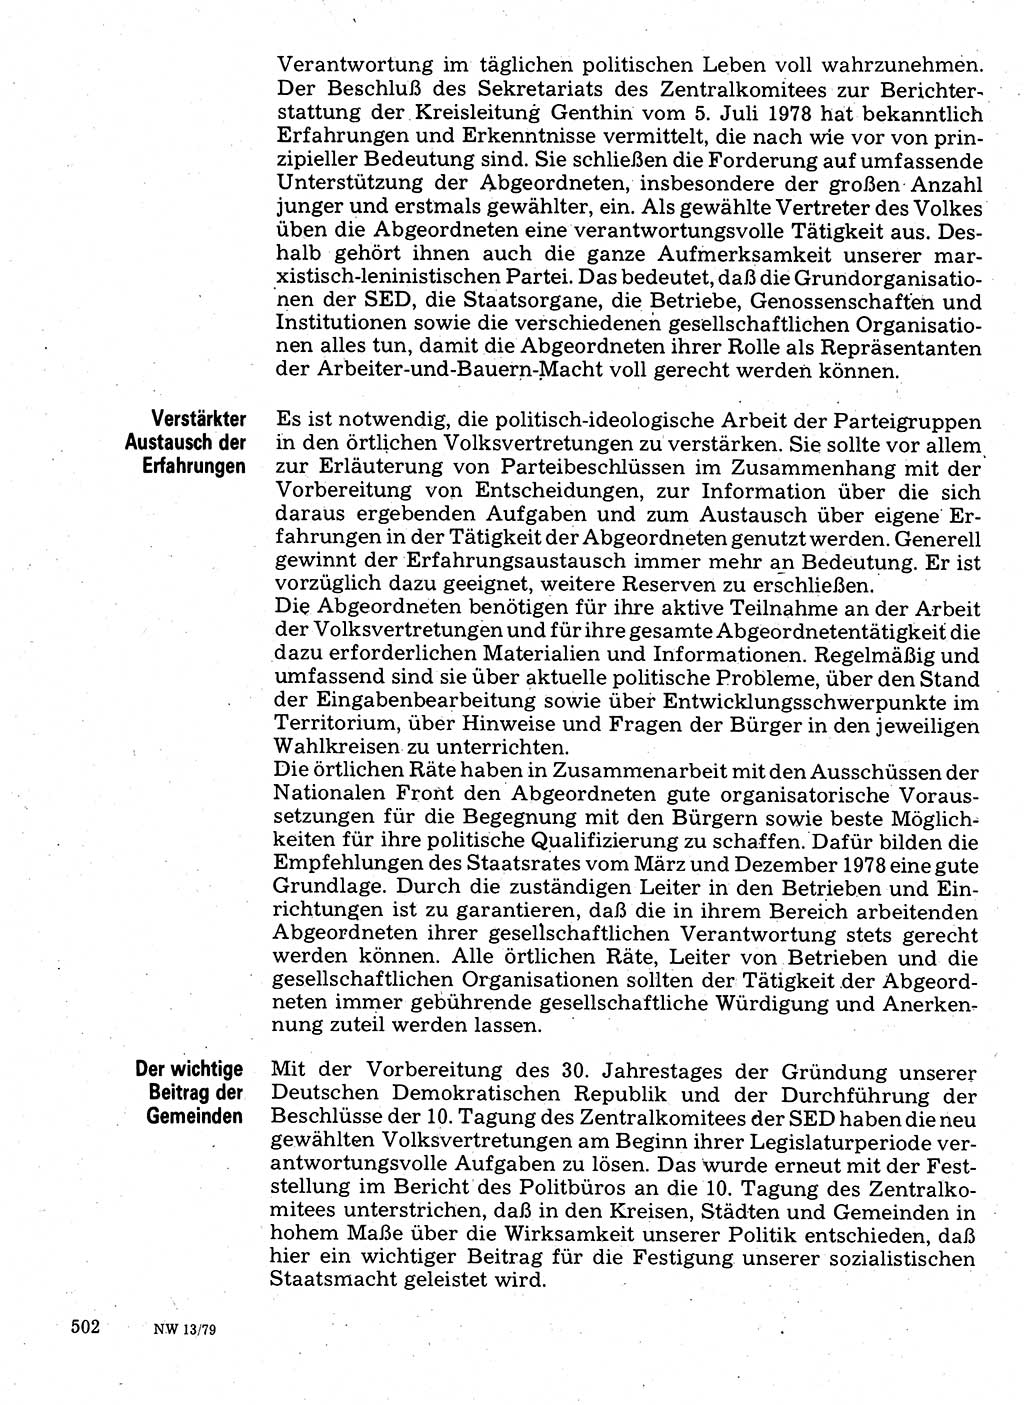 Neuer Weg (NW), Organ des Zentralkomitees (ZK) der SED (Sozialistische Einheitspartei Deutschlands) für Fragen des Parteilebens, 34. Jahrgang [Deutsche Demokratische Republik (DDR)] 1979, Seite 502 (NW ZK SED DDR 1979, S. 502)